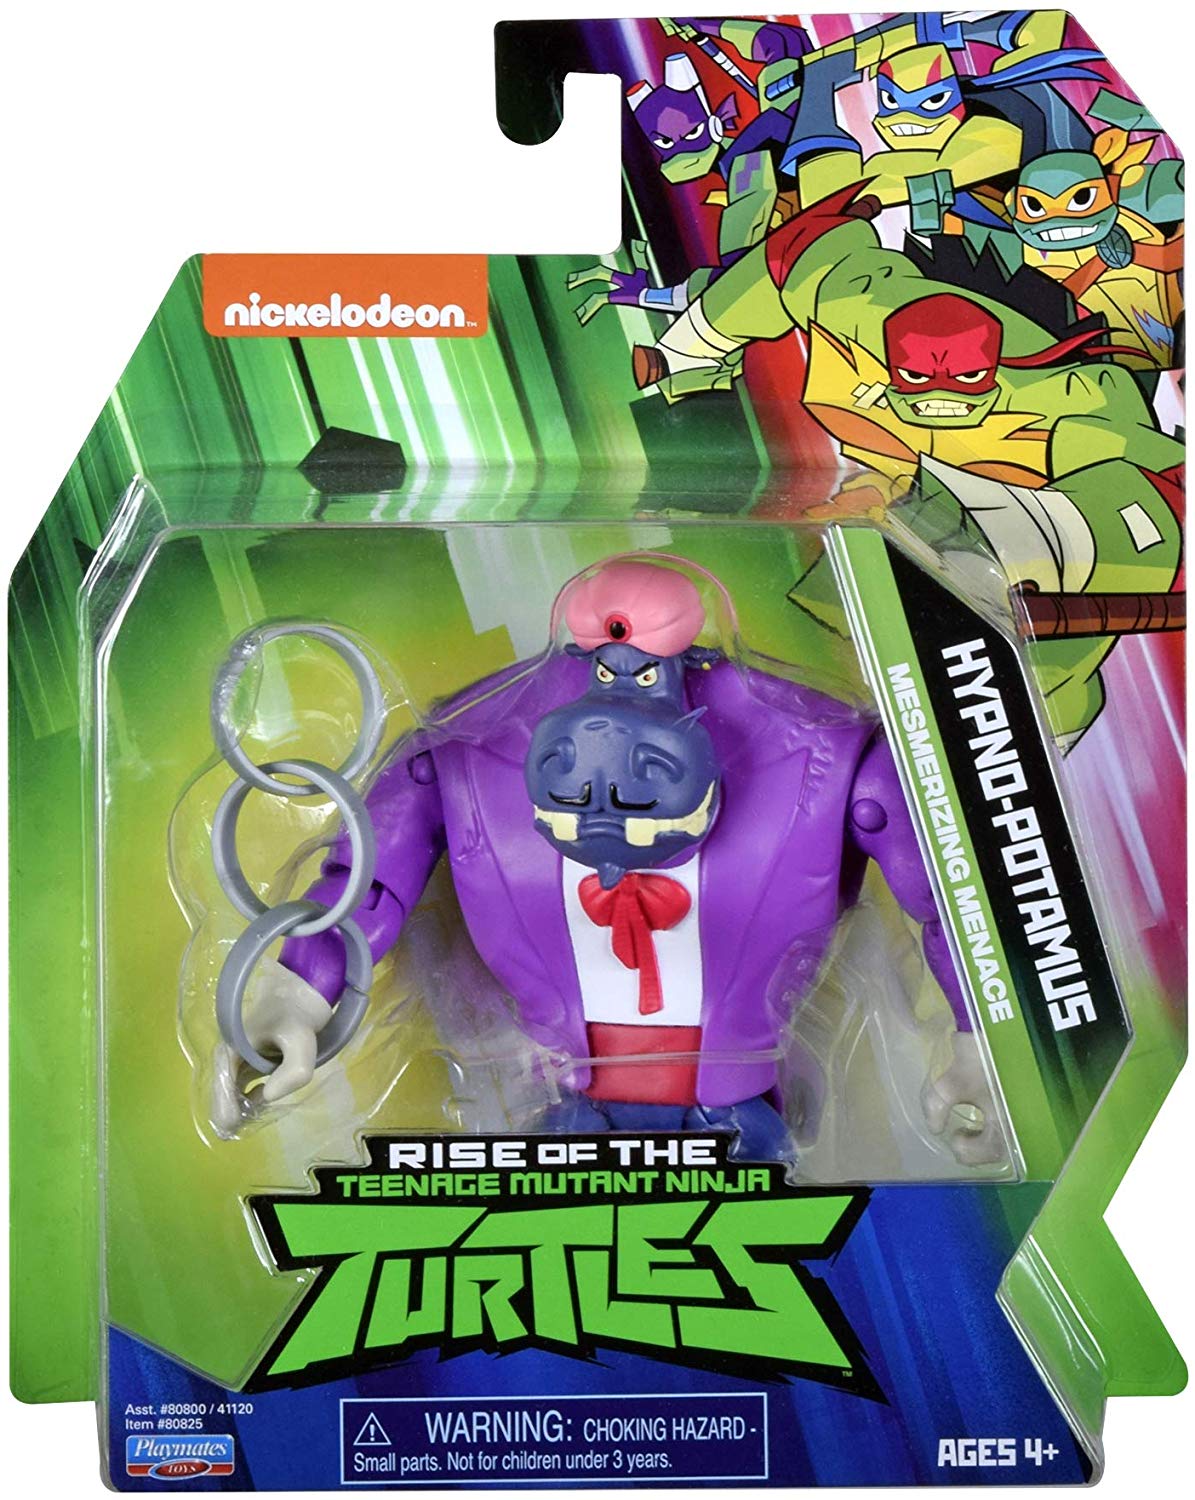 rise of the teenage mutant ninja turtles toys 2019